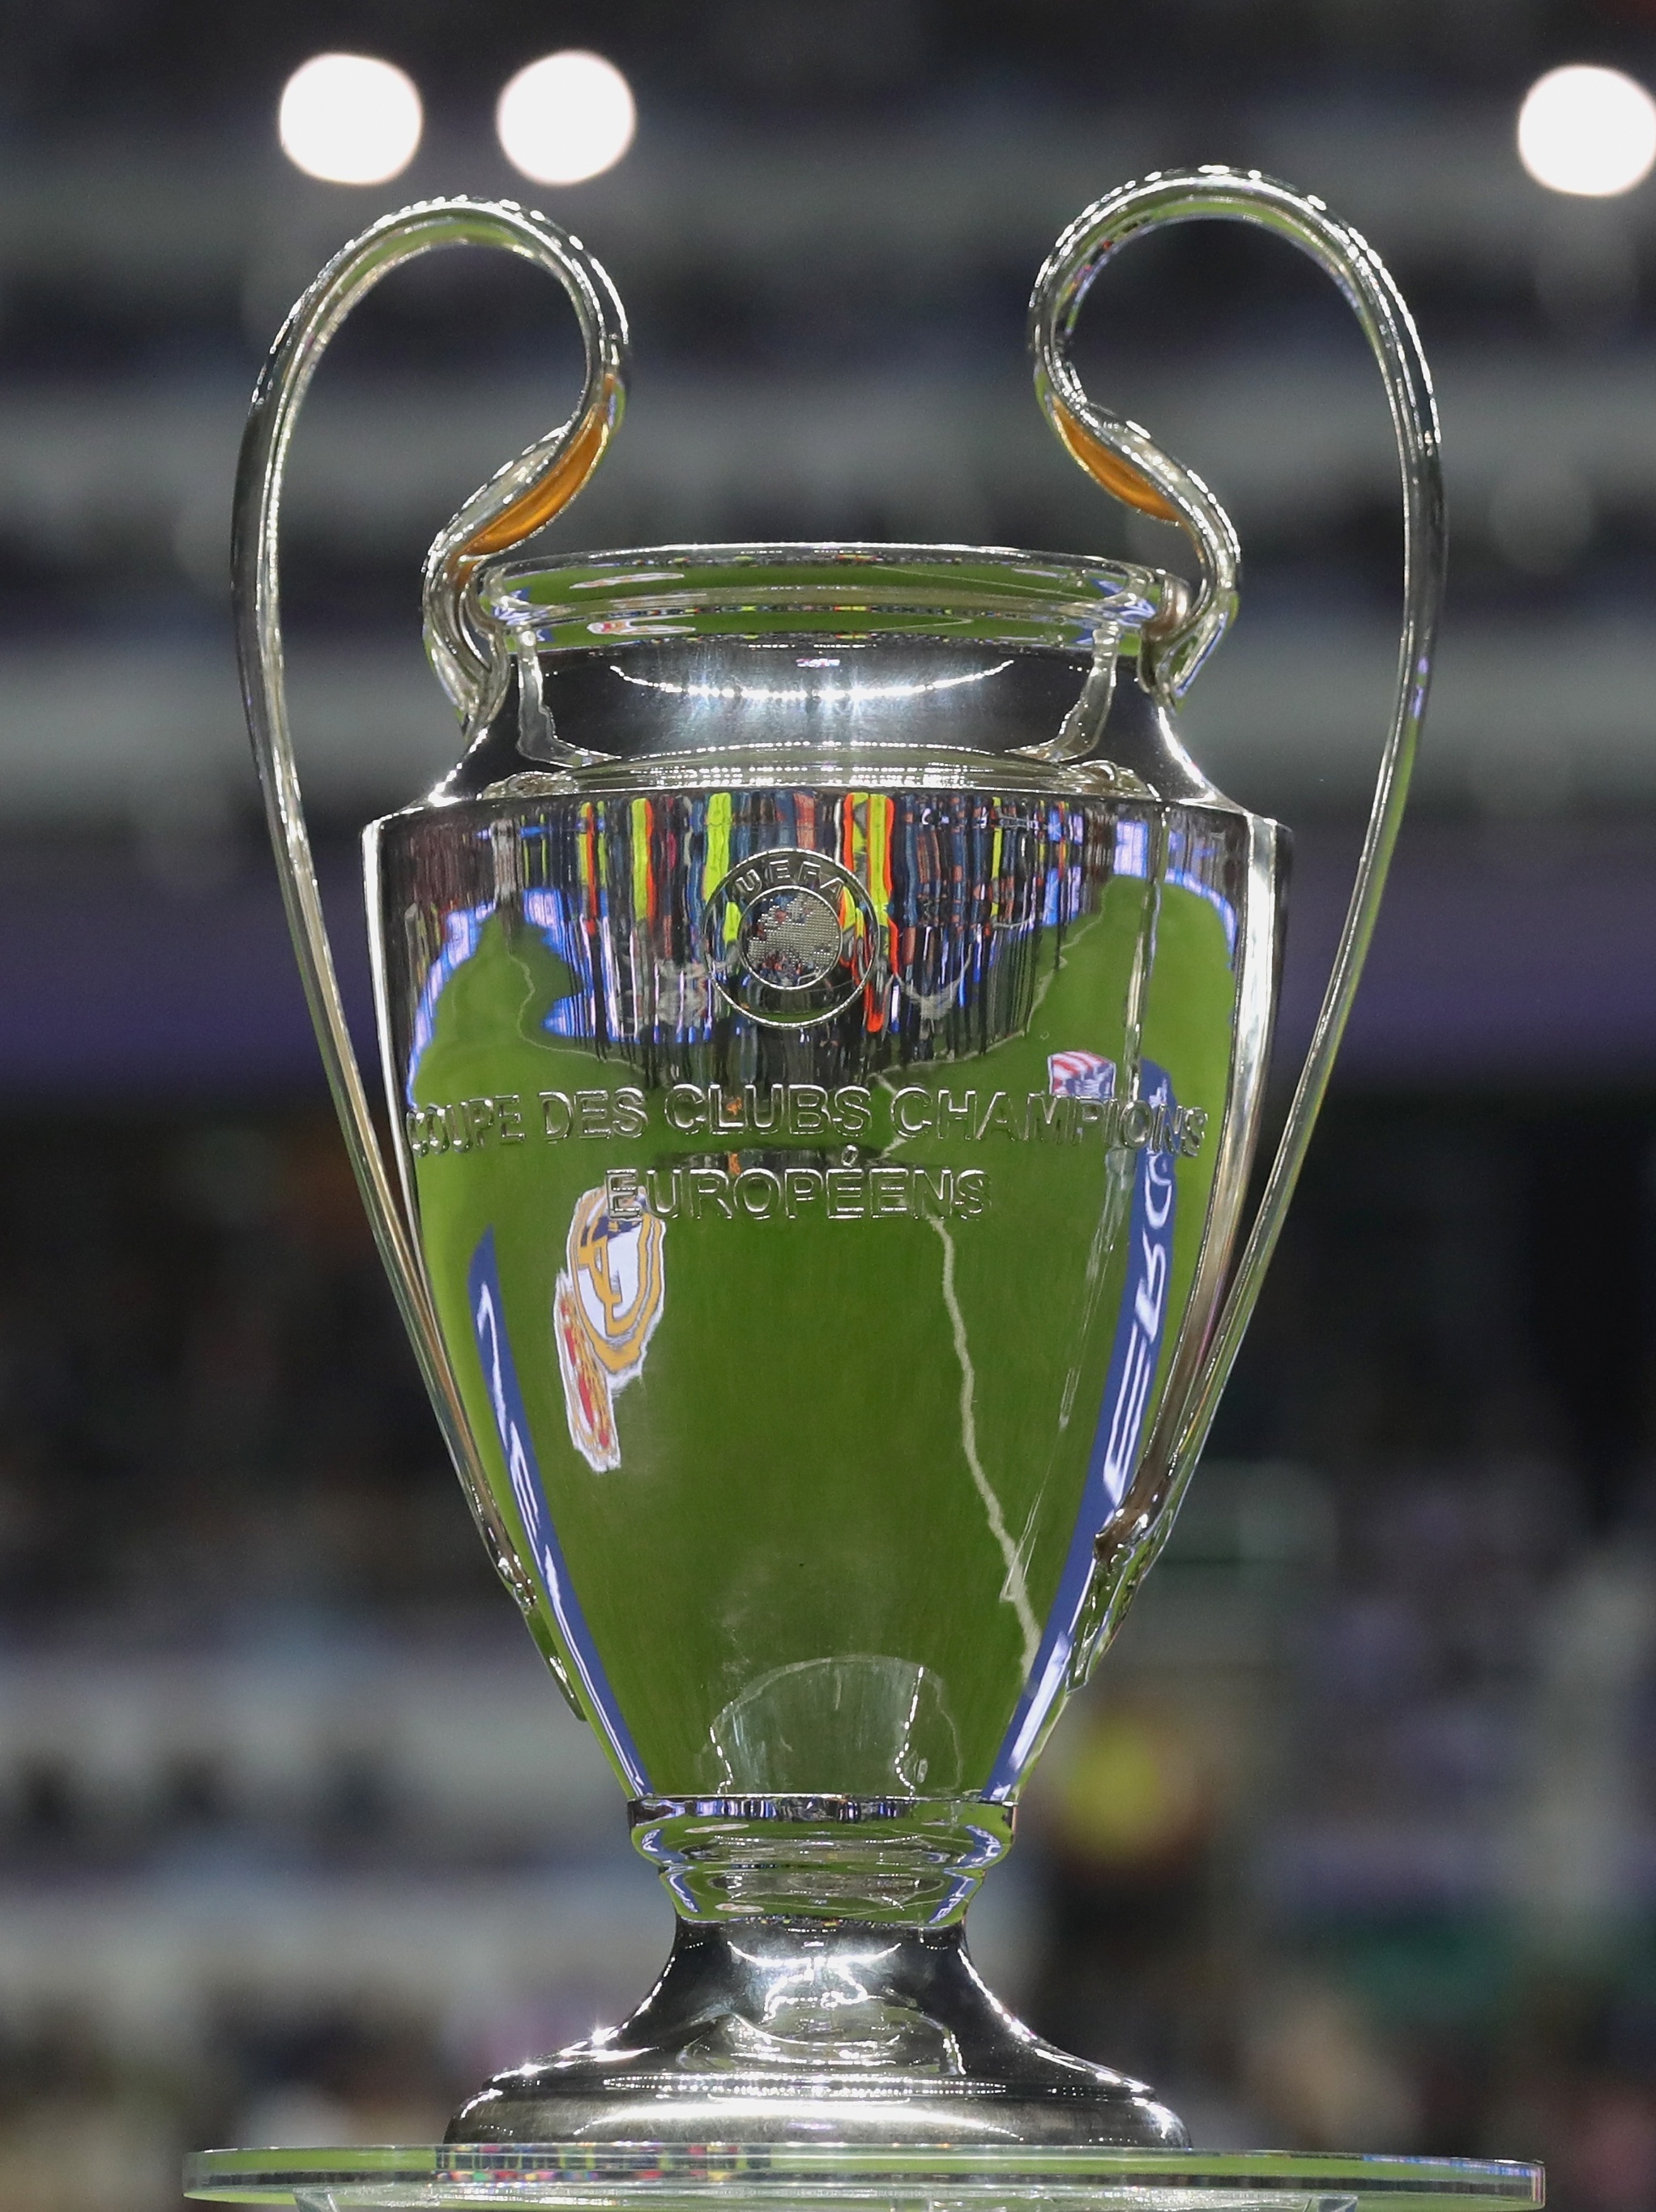 Sorteio das oitavas-de-final da UEFA Champions League 2021/2022 – Blog  Cultura & Futebol